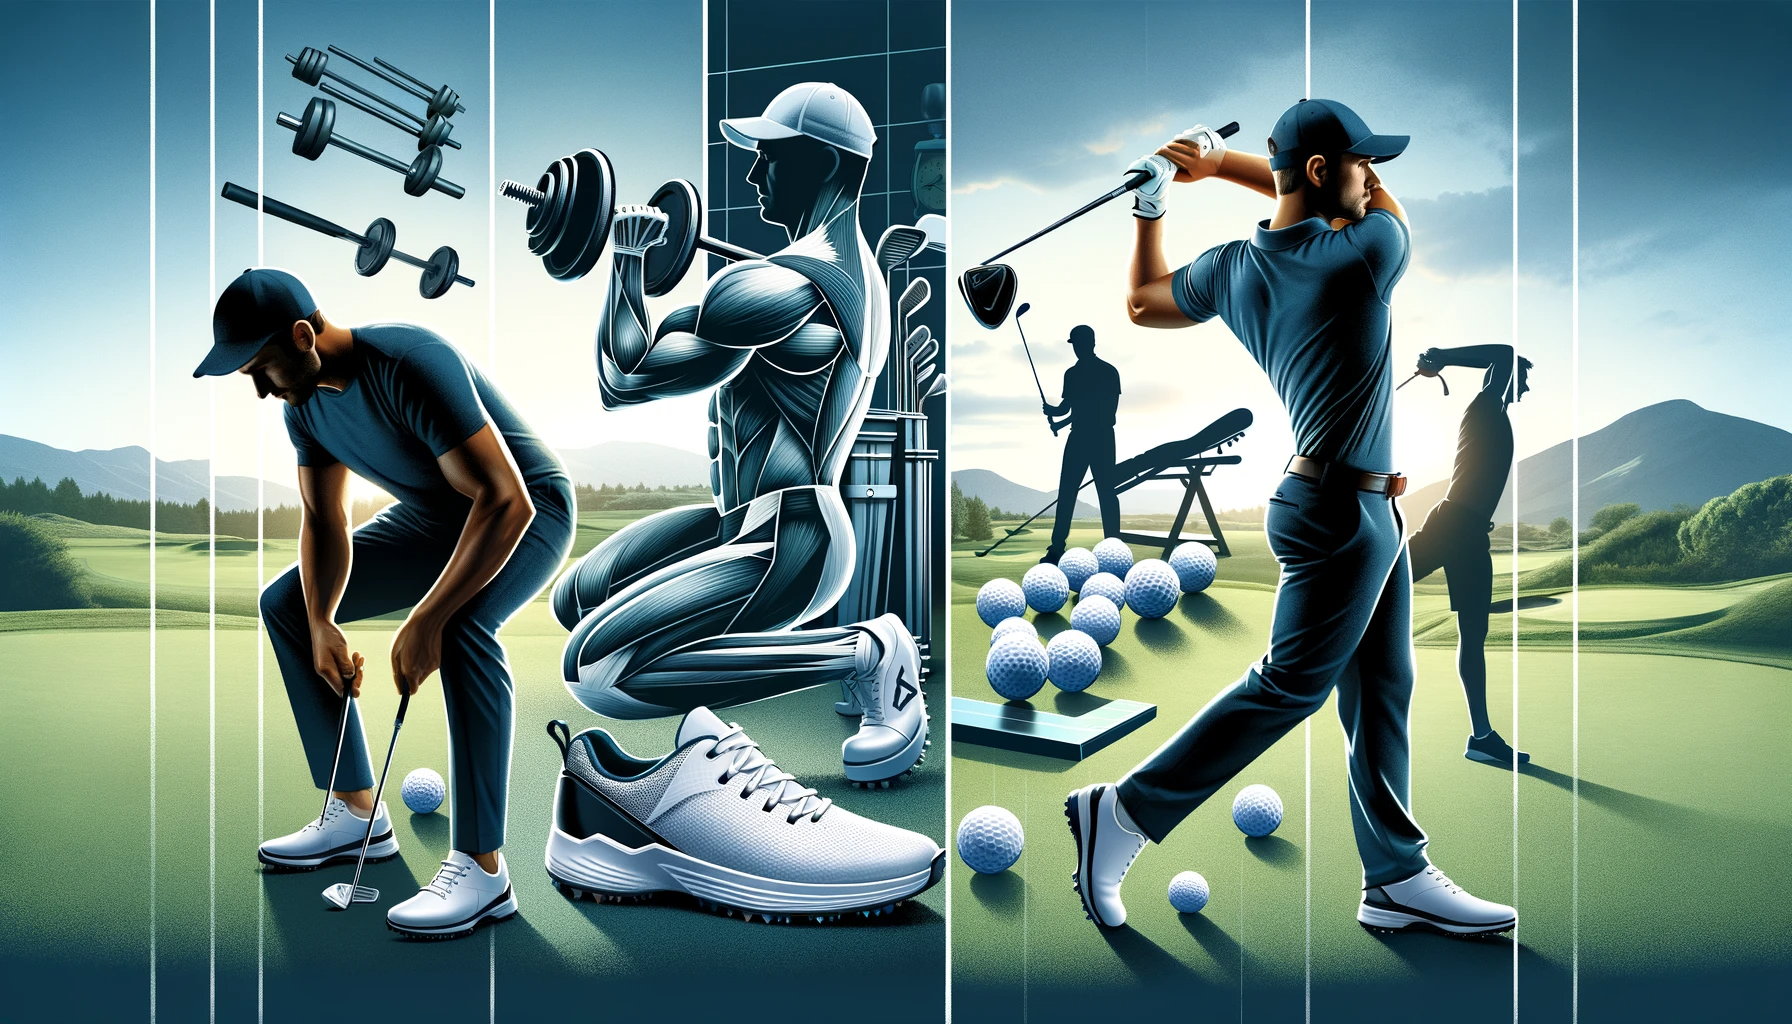 골프에서의 부상 예방과 관리: 스윙 기술&#44; 클럽 피팅&#44; 신체 체크포인트 - 신체의 상태 확인